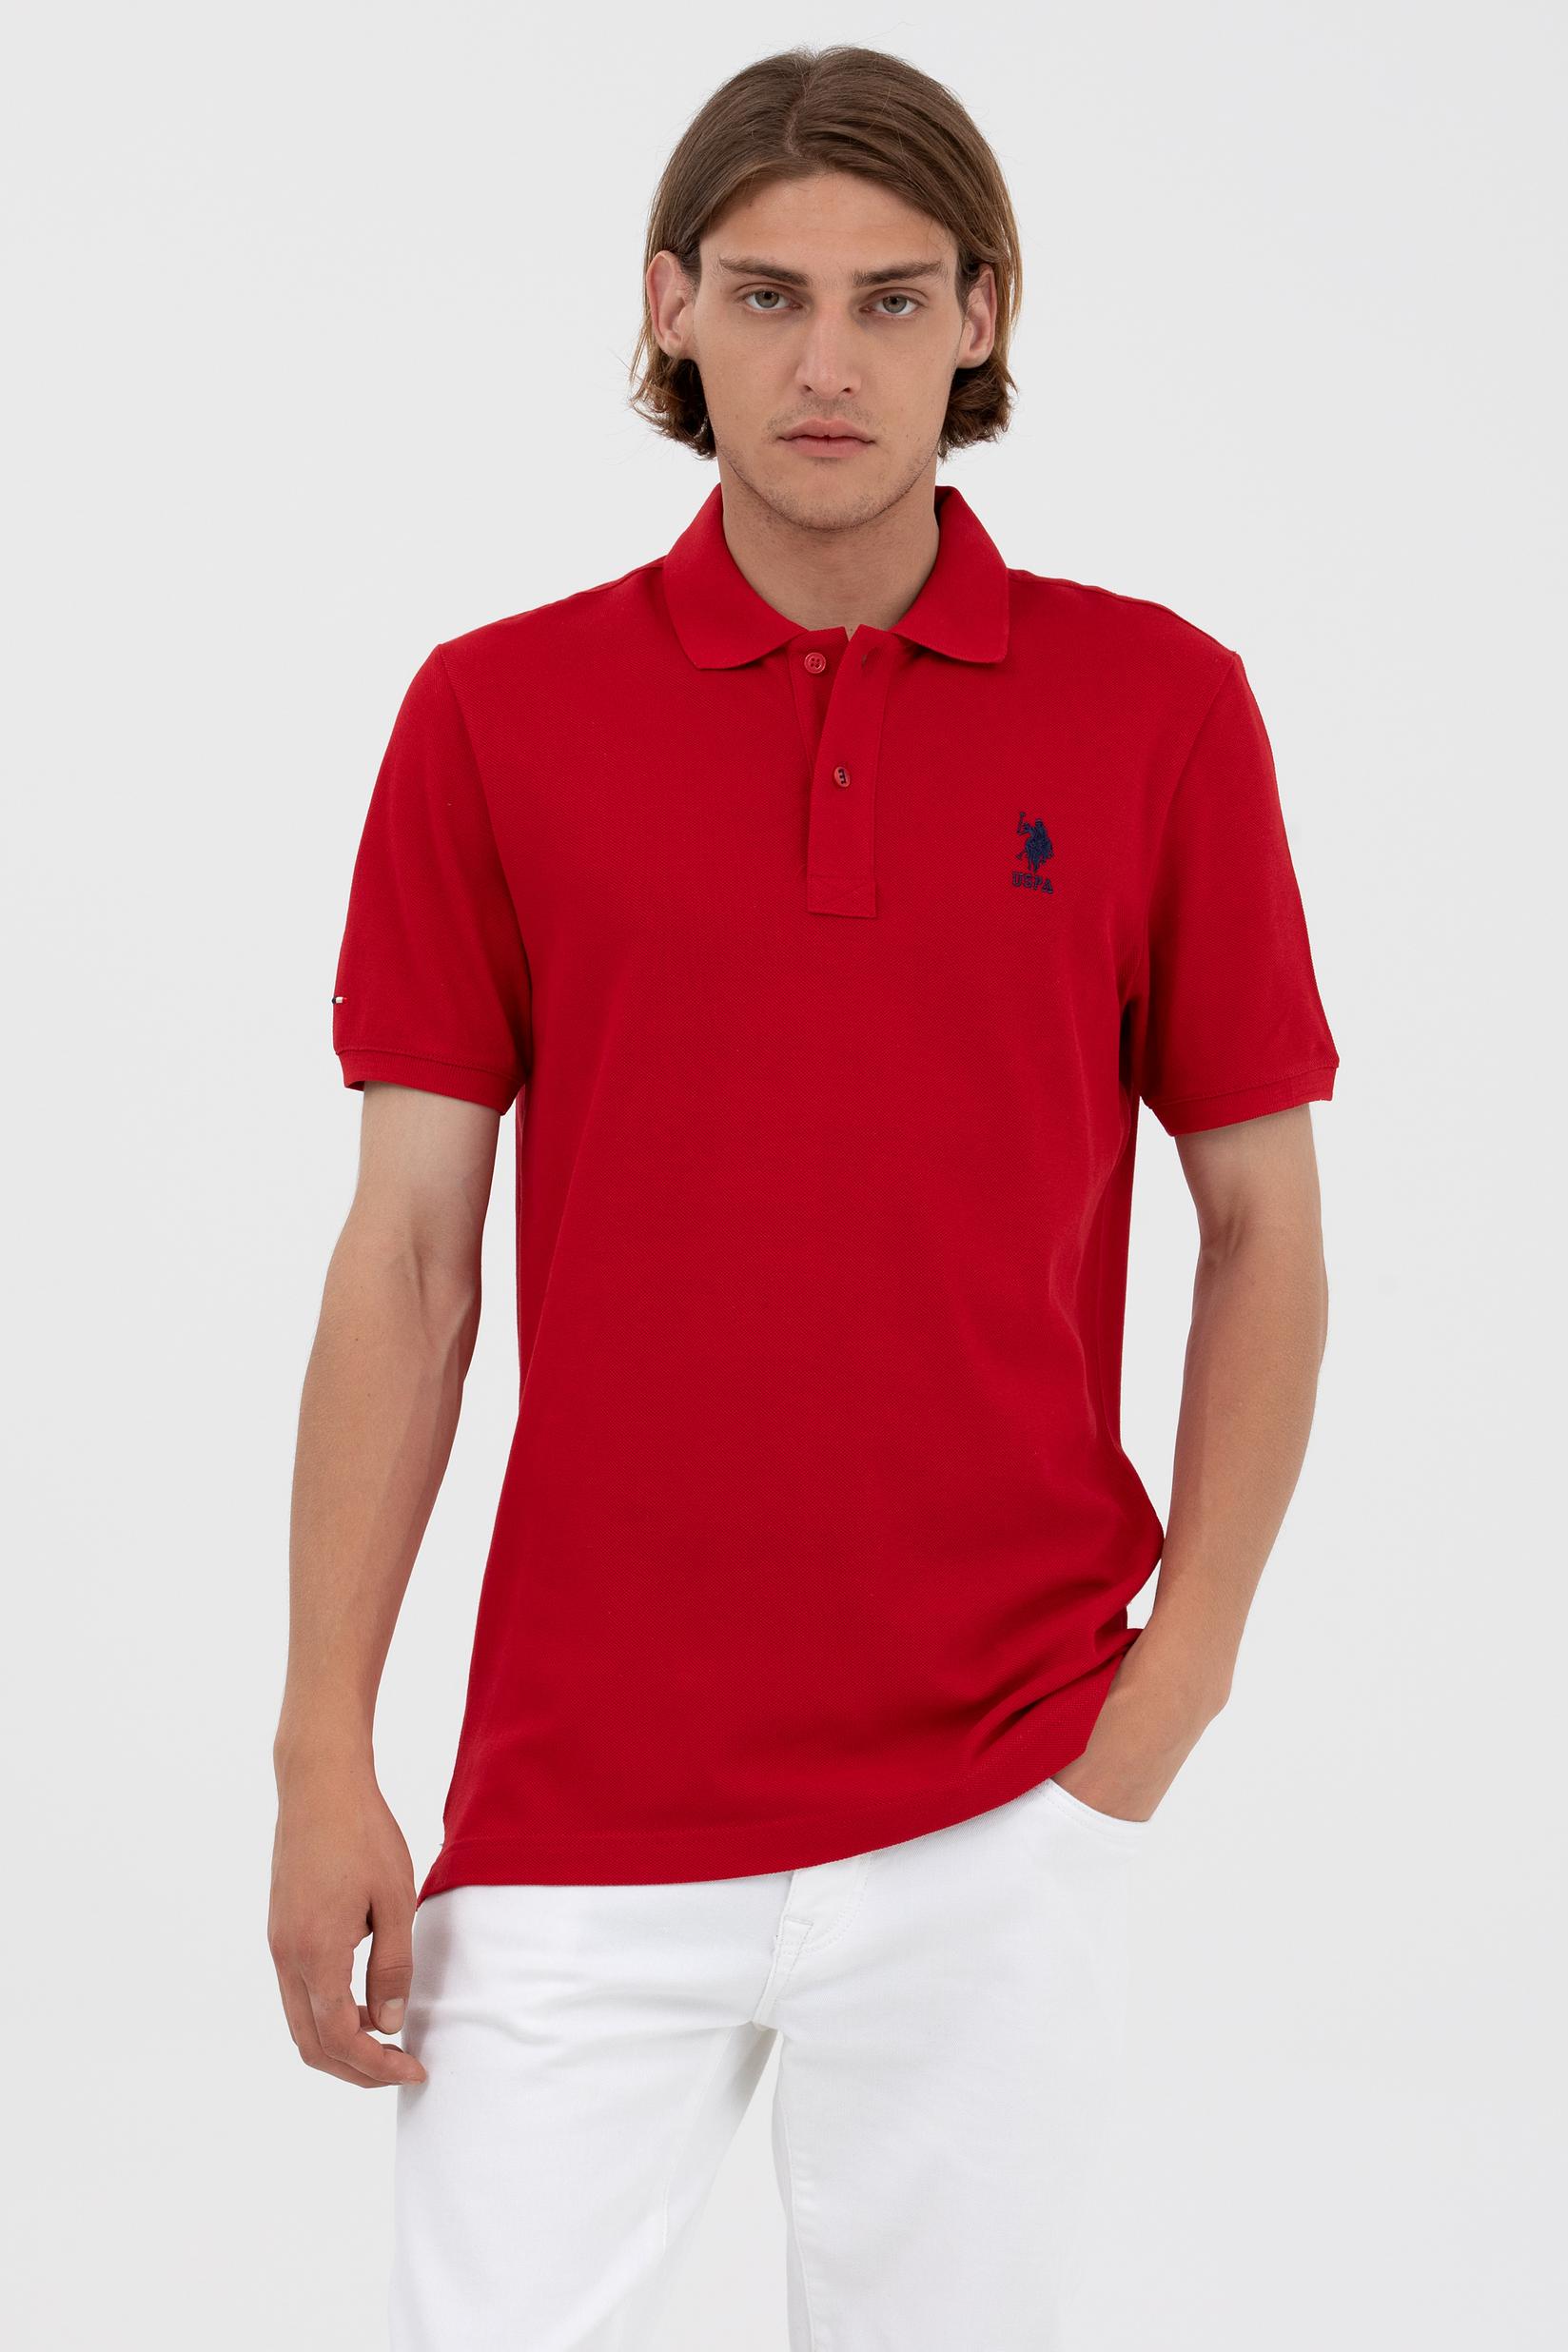 U.S. POLO ASSN. Muška majica Basic crvena